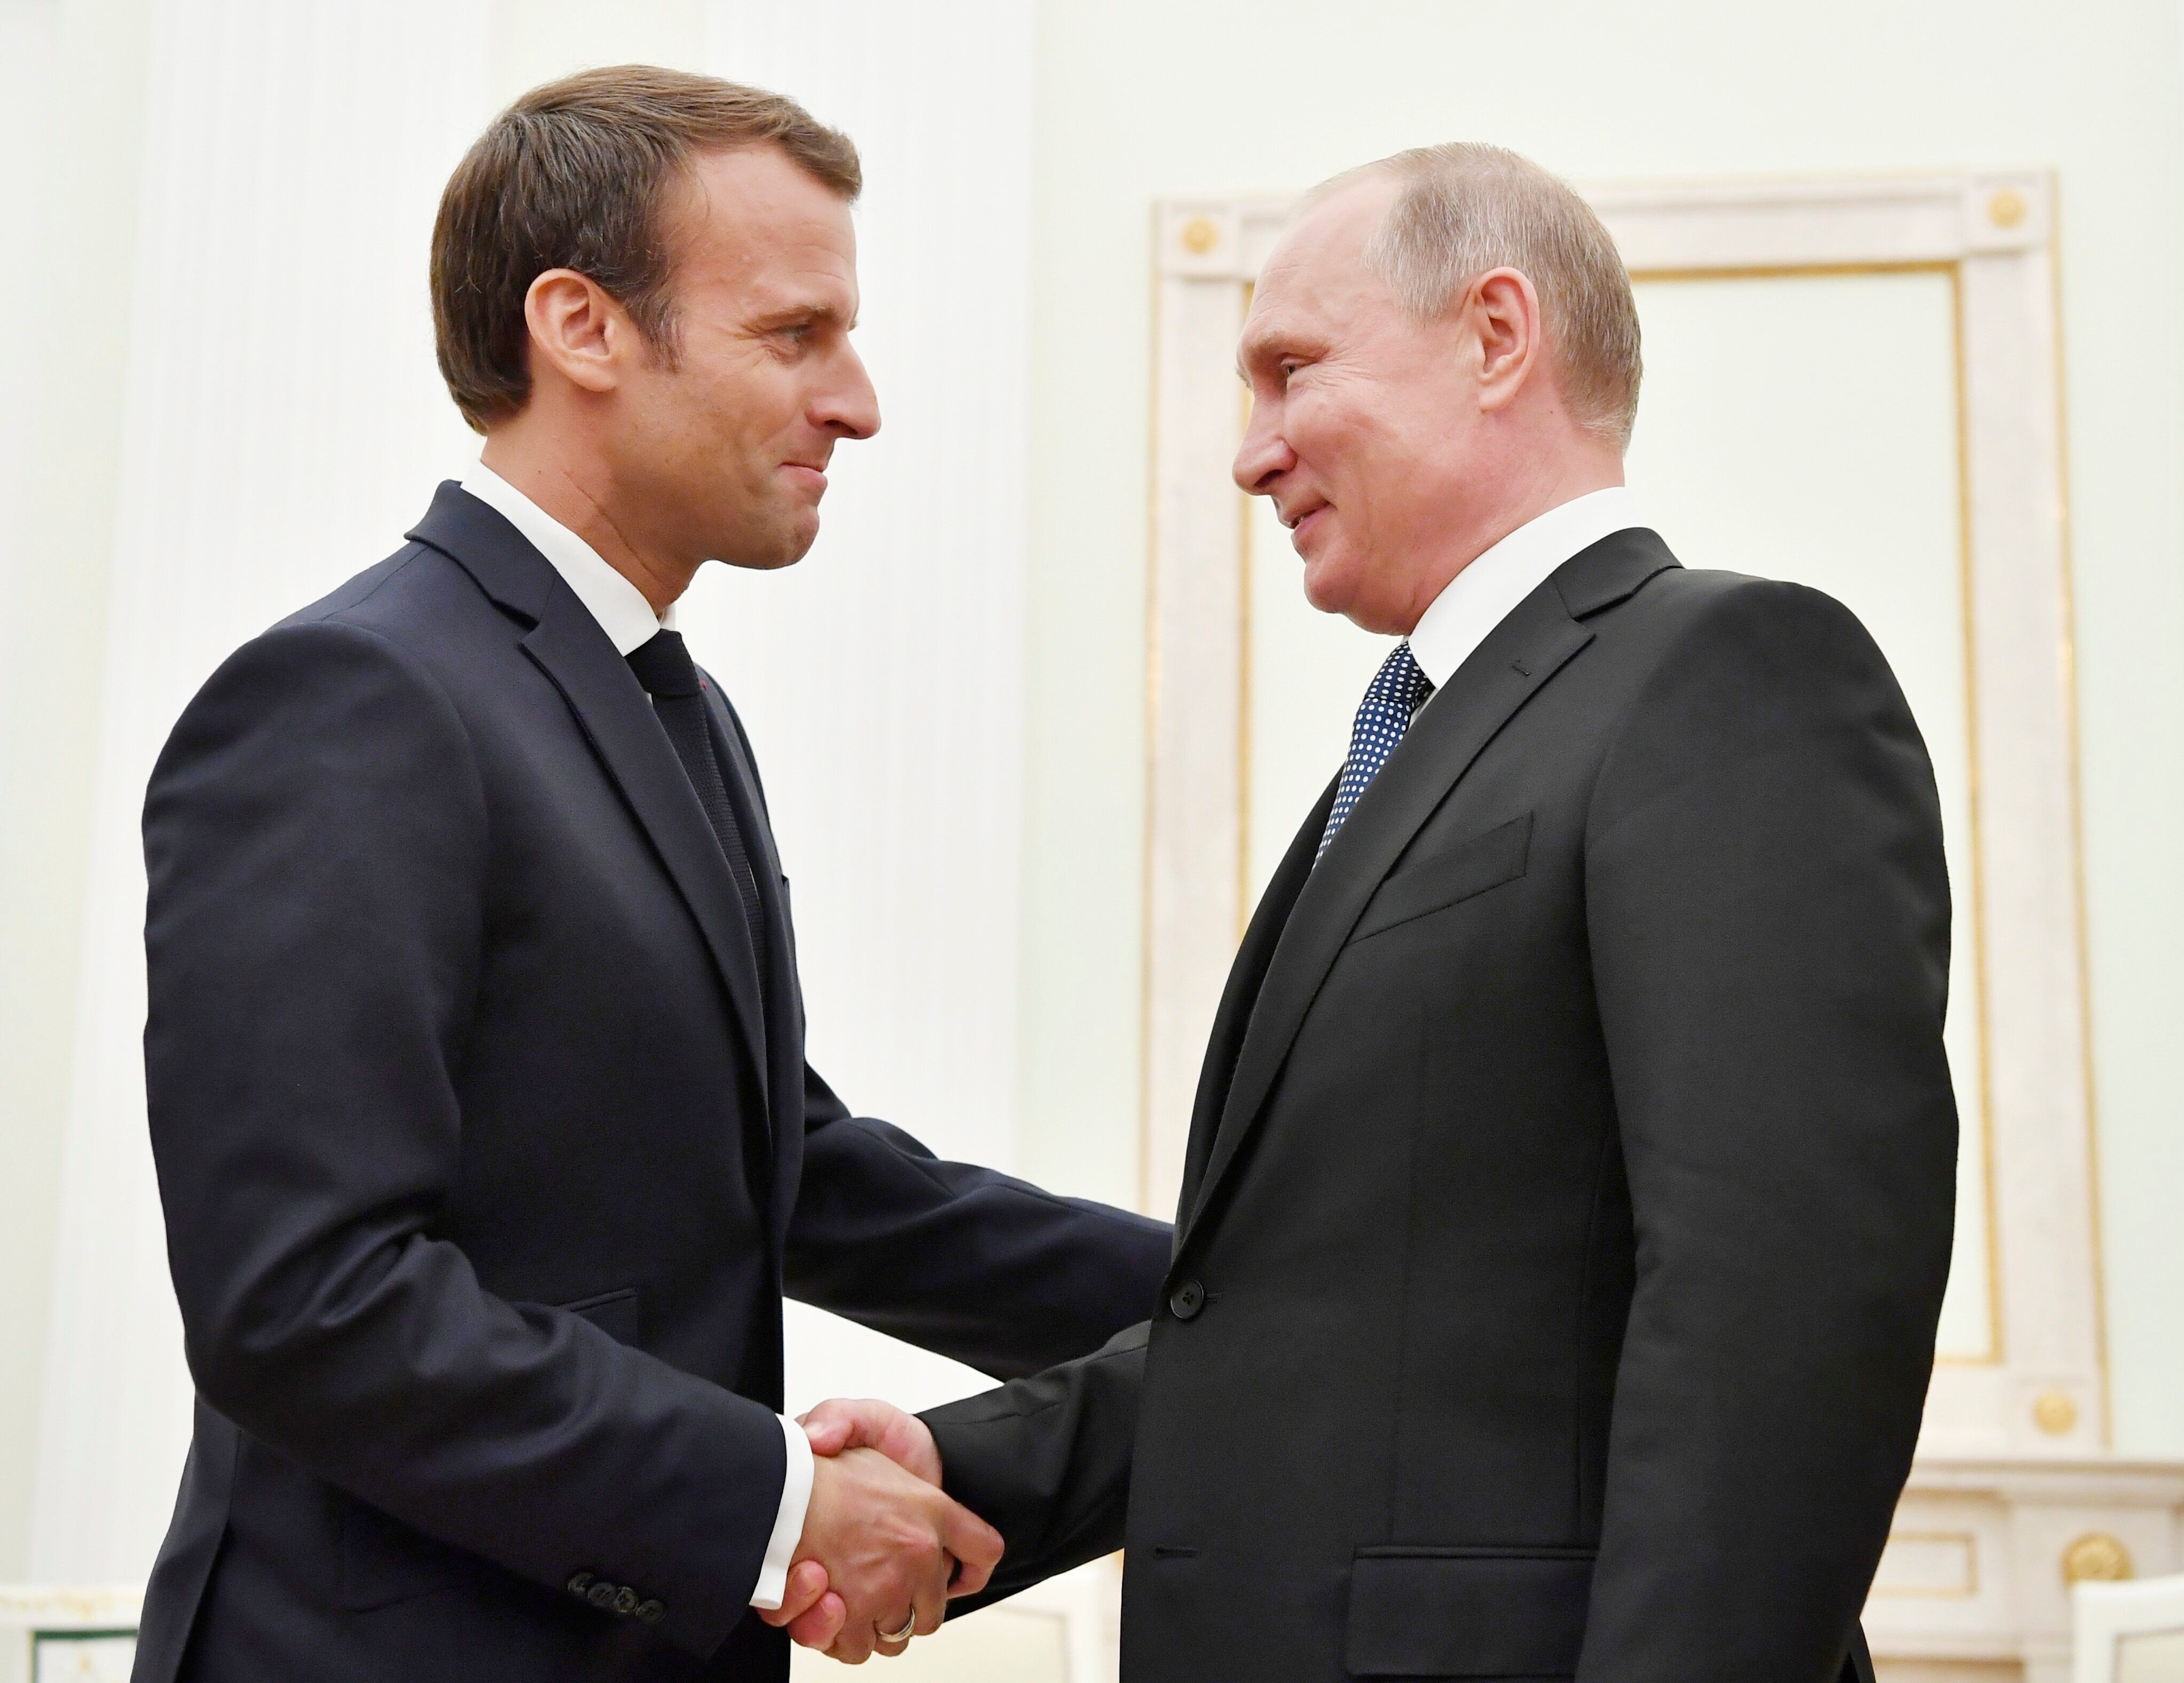 Image d'illustration - Le président Macron et son homologue russe Poutine lors d'une rencontre...